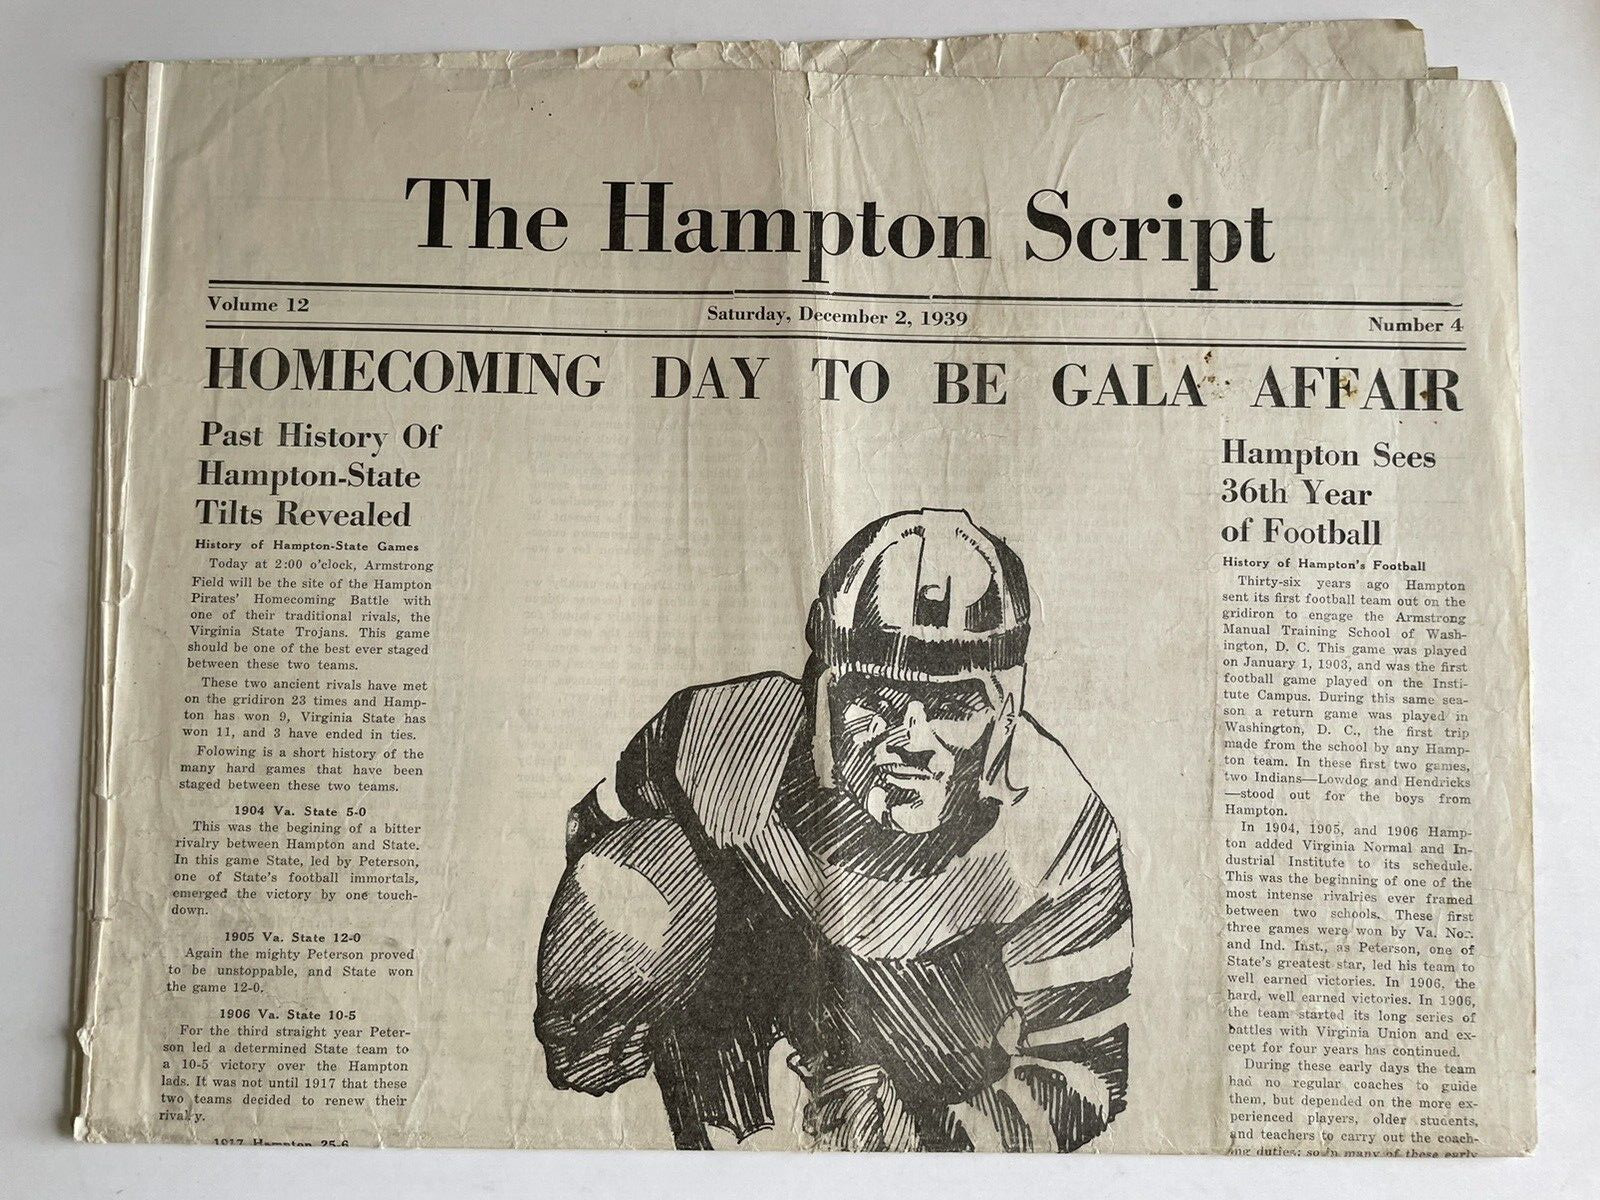 Hampton Script Civil Rights 1940 #historyinpieces HBCU